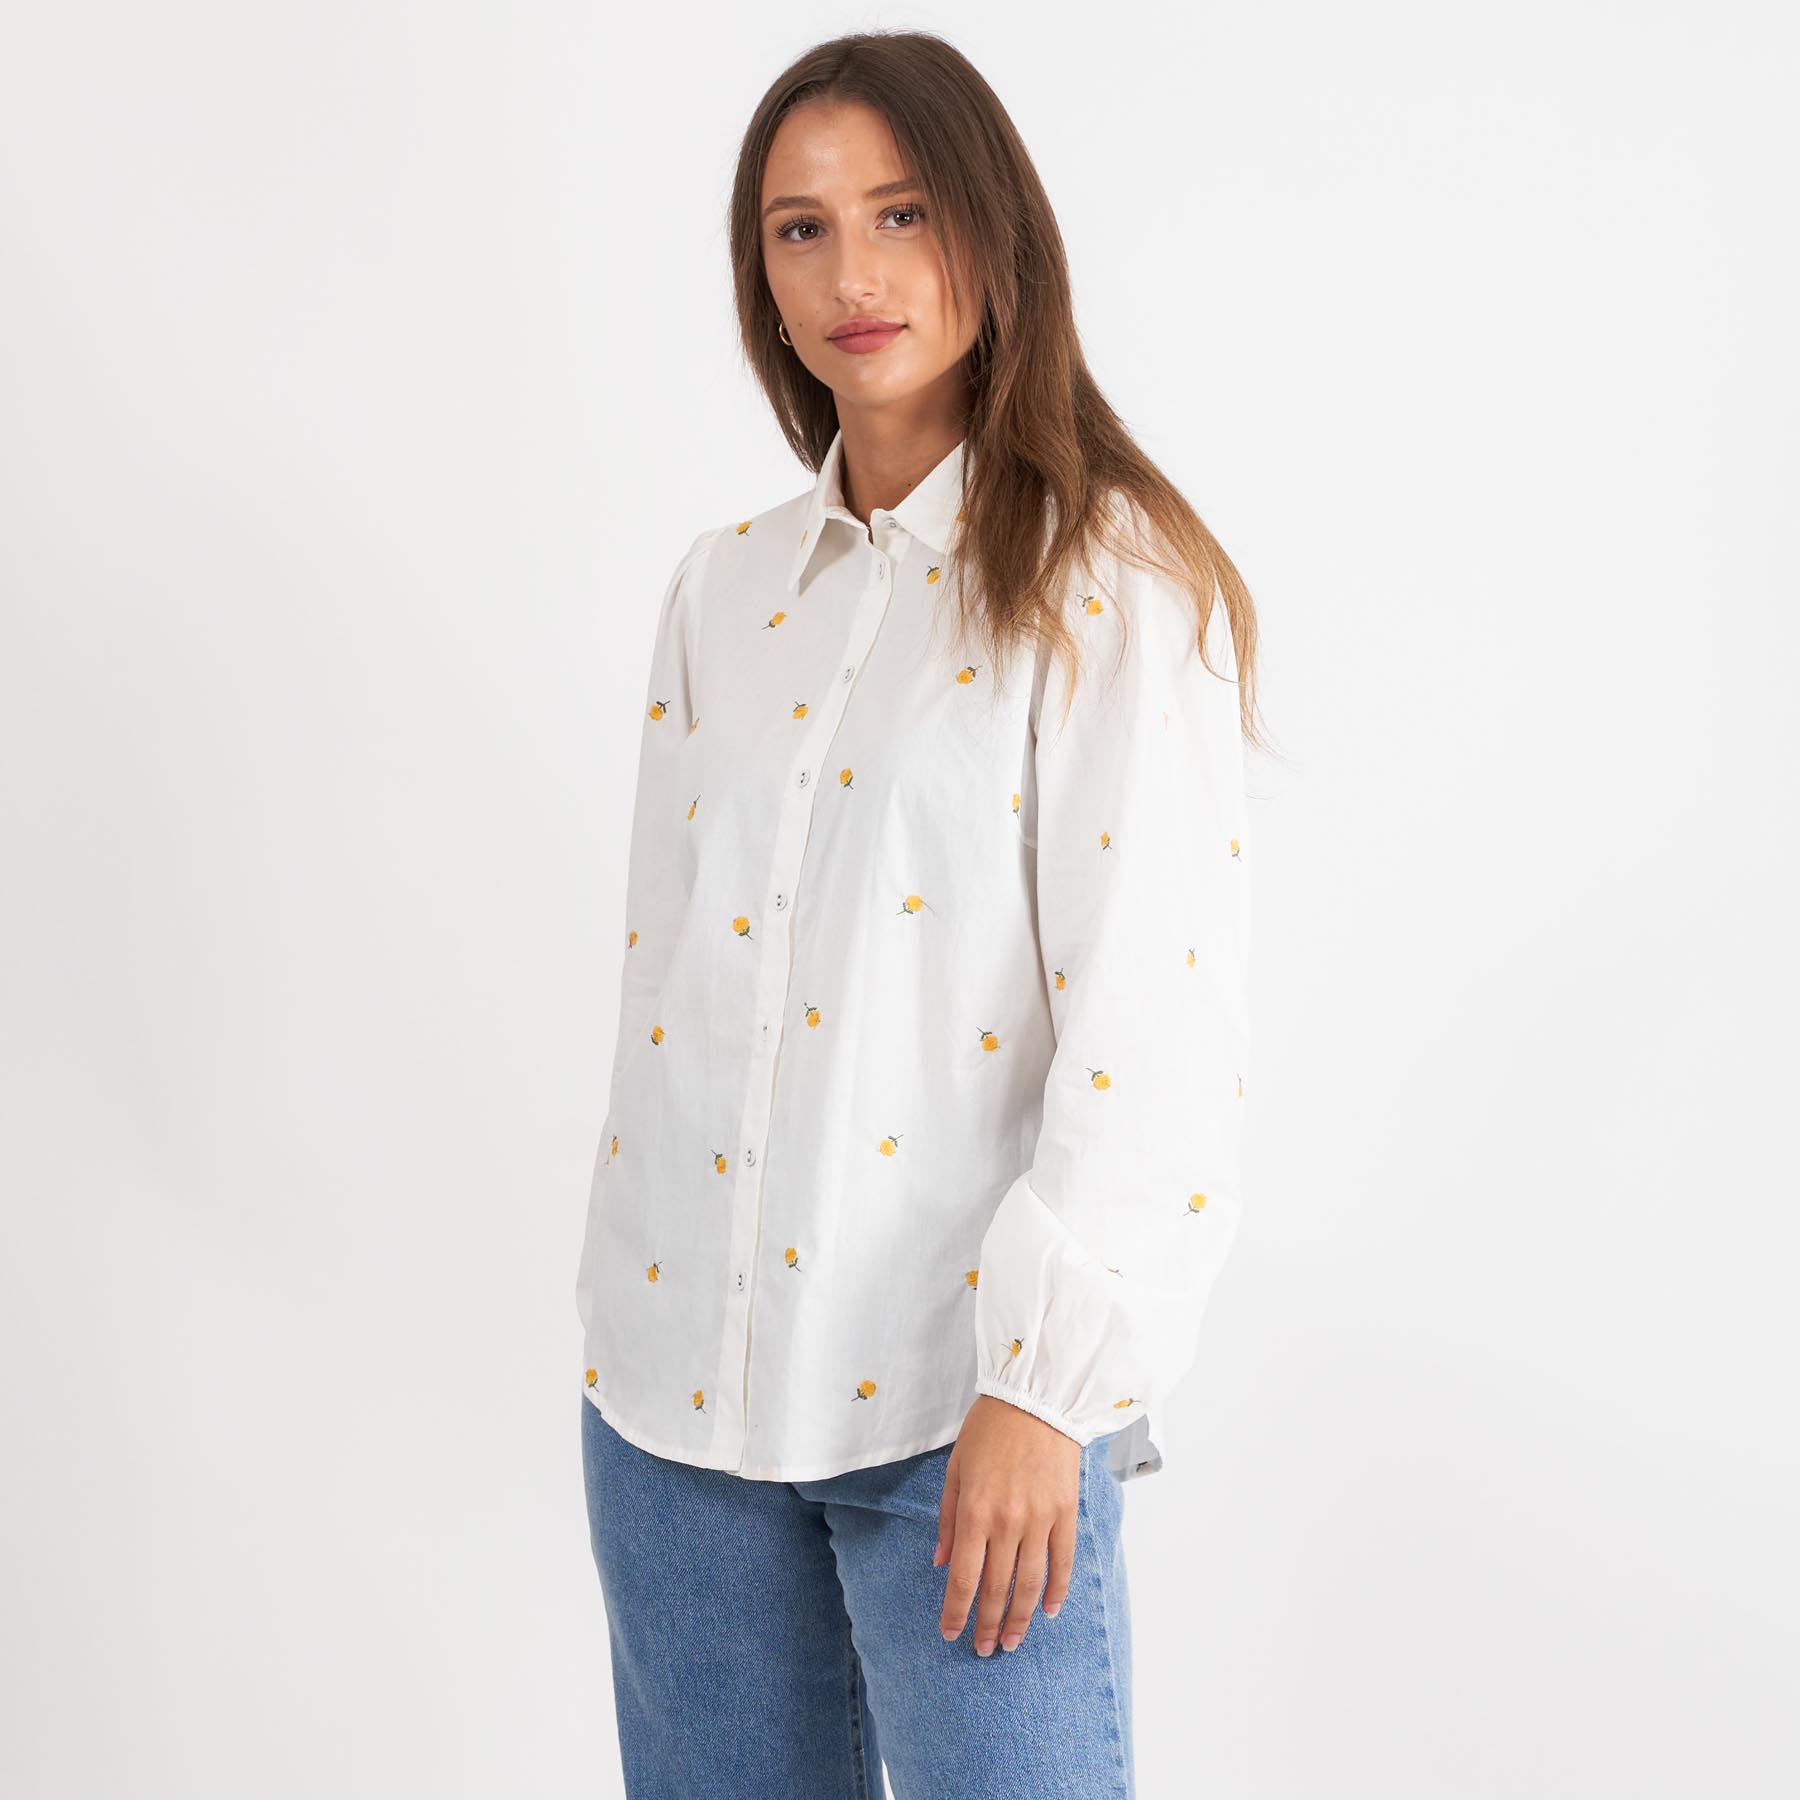 SisterS Point - Ebbey-sh19 - Bluser og skjorter til kvinder - WHITE/YELLOW FLOWER - XS